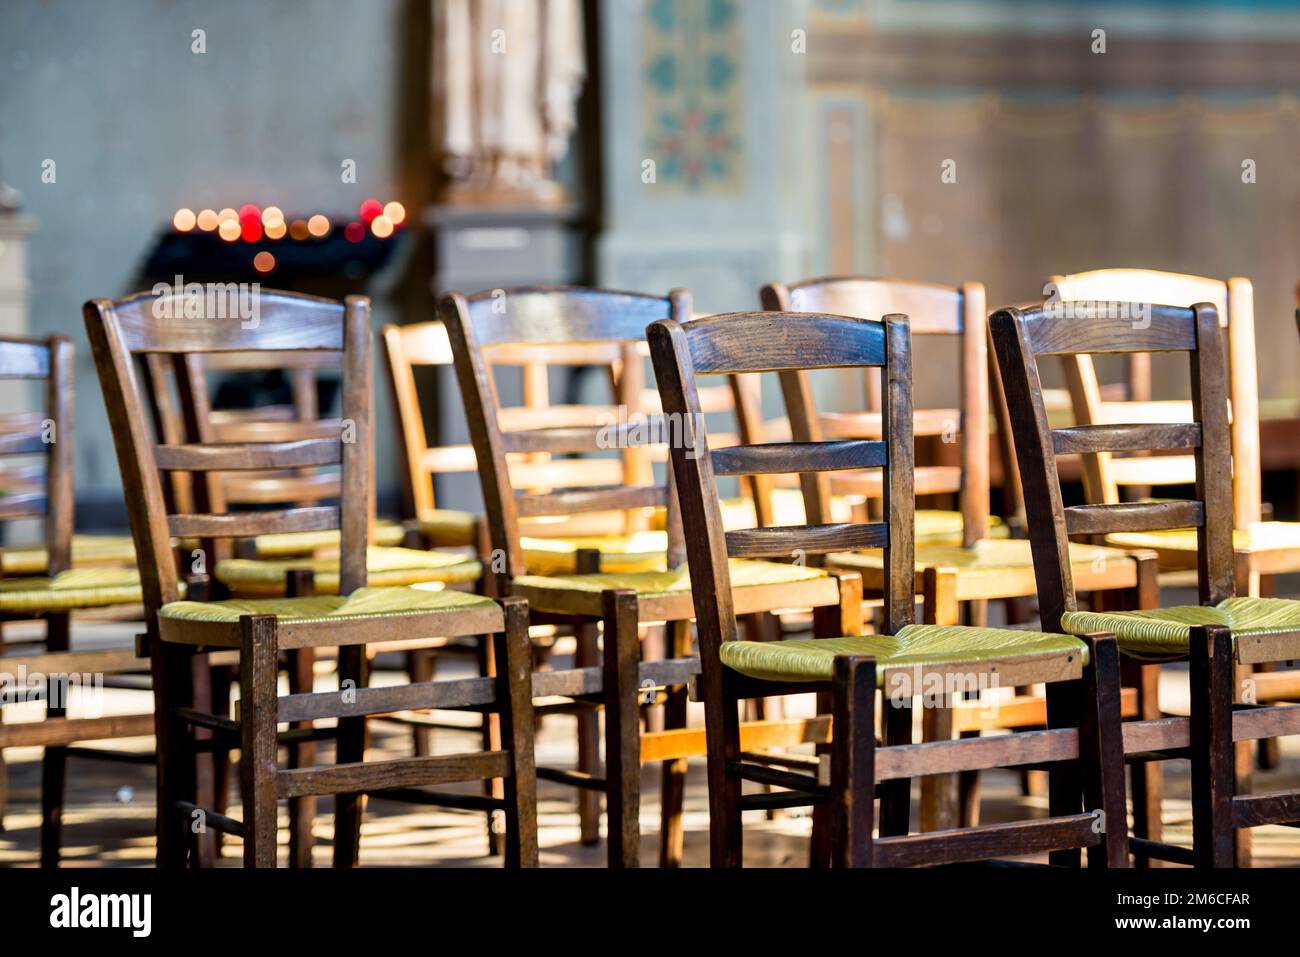 Una vista ravvicinata delle sedie in legno con posti a sedere in vimini verdi allineati davanti ad una rastrelliera che tiene accese candele votive. Foto Stock